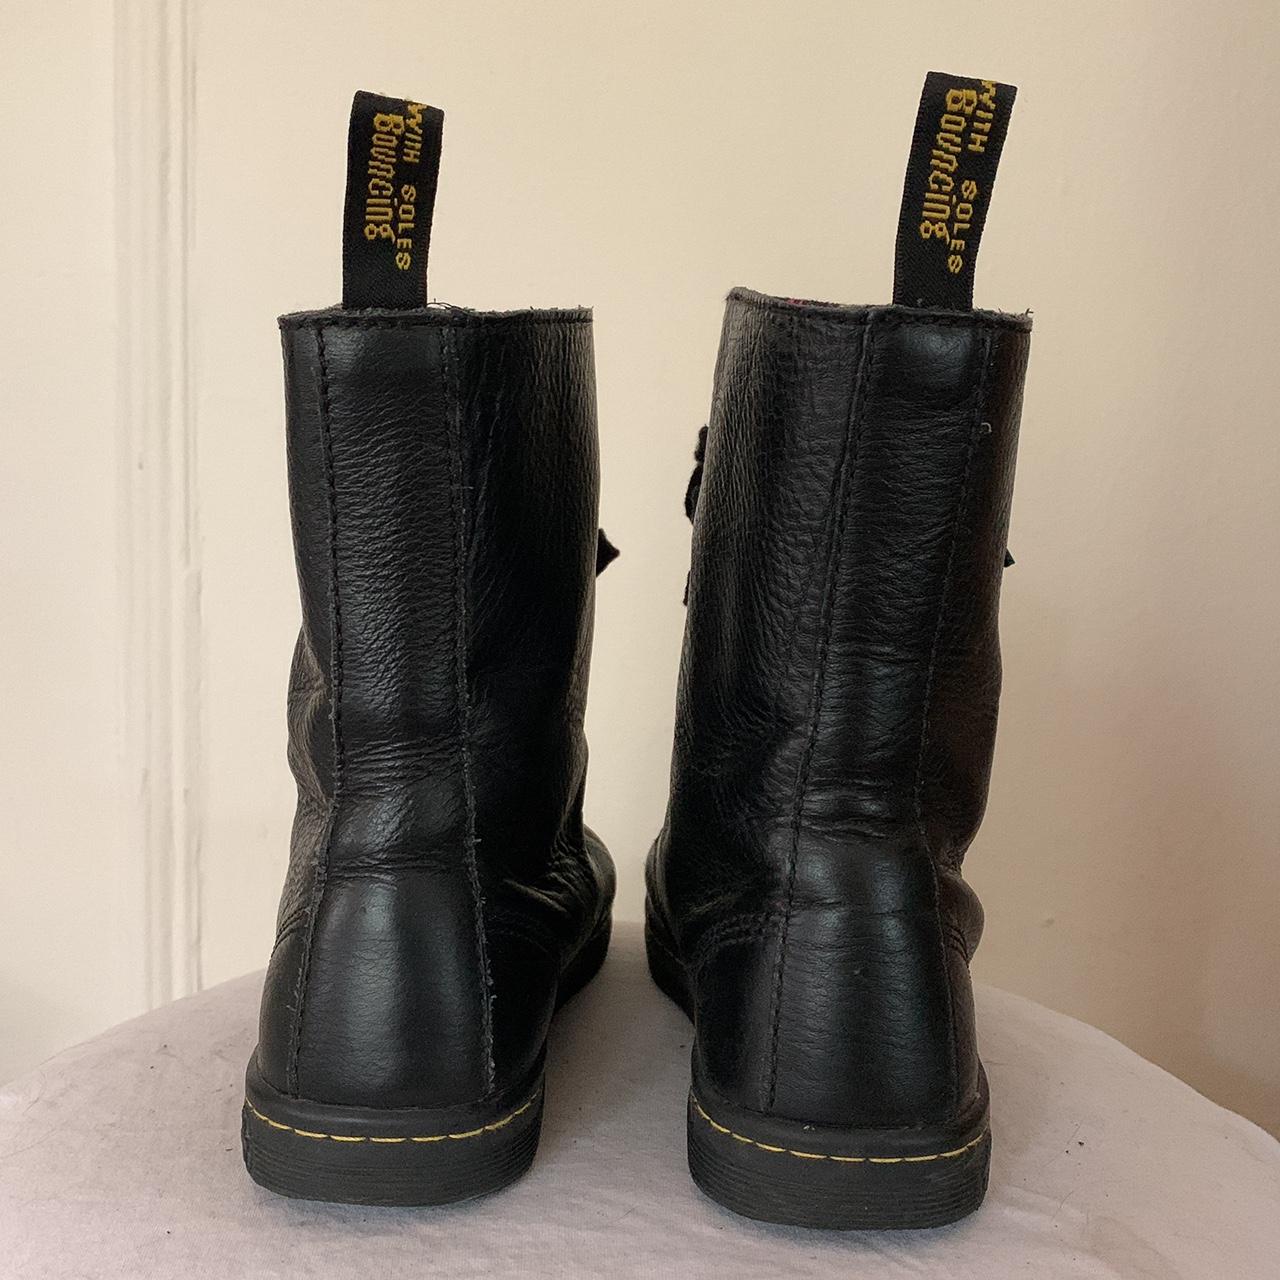 Dr. Martens Stratford black leather boots with... - Depop